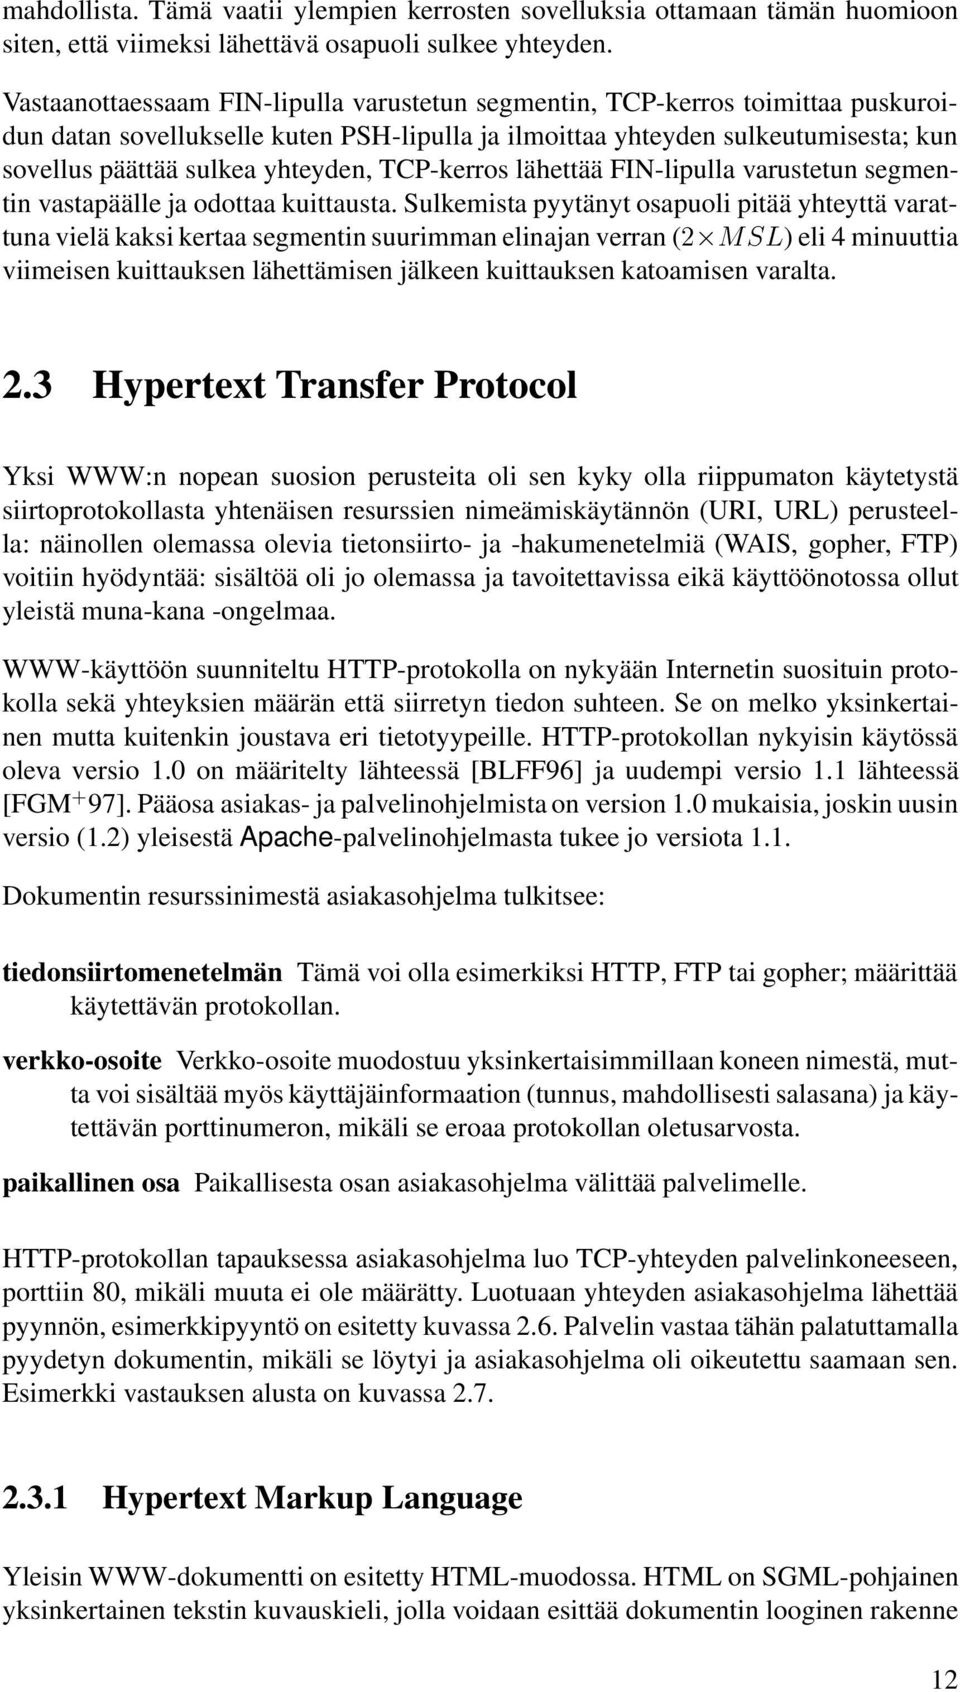 TCP-kerros lähettää FIN-lipulla varustetun segmentin vastapäälle ja odottaa kuittausta.